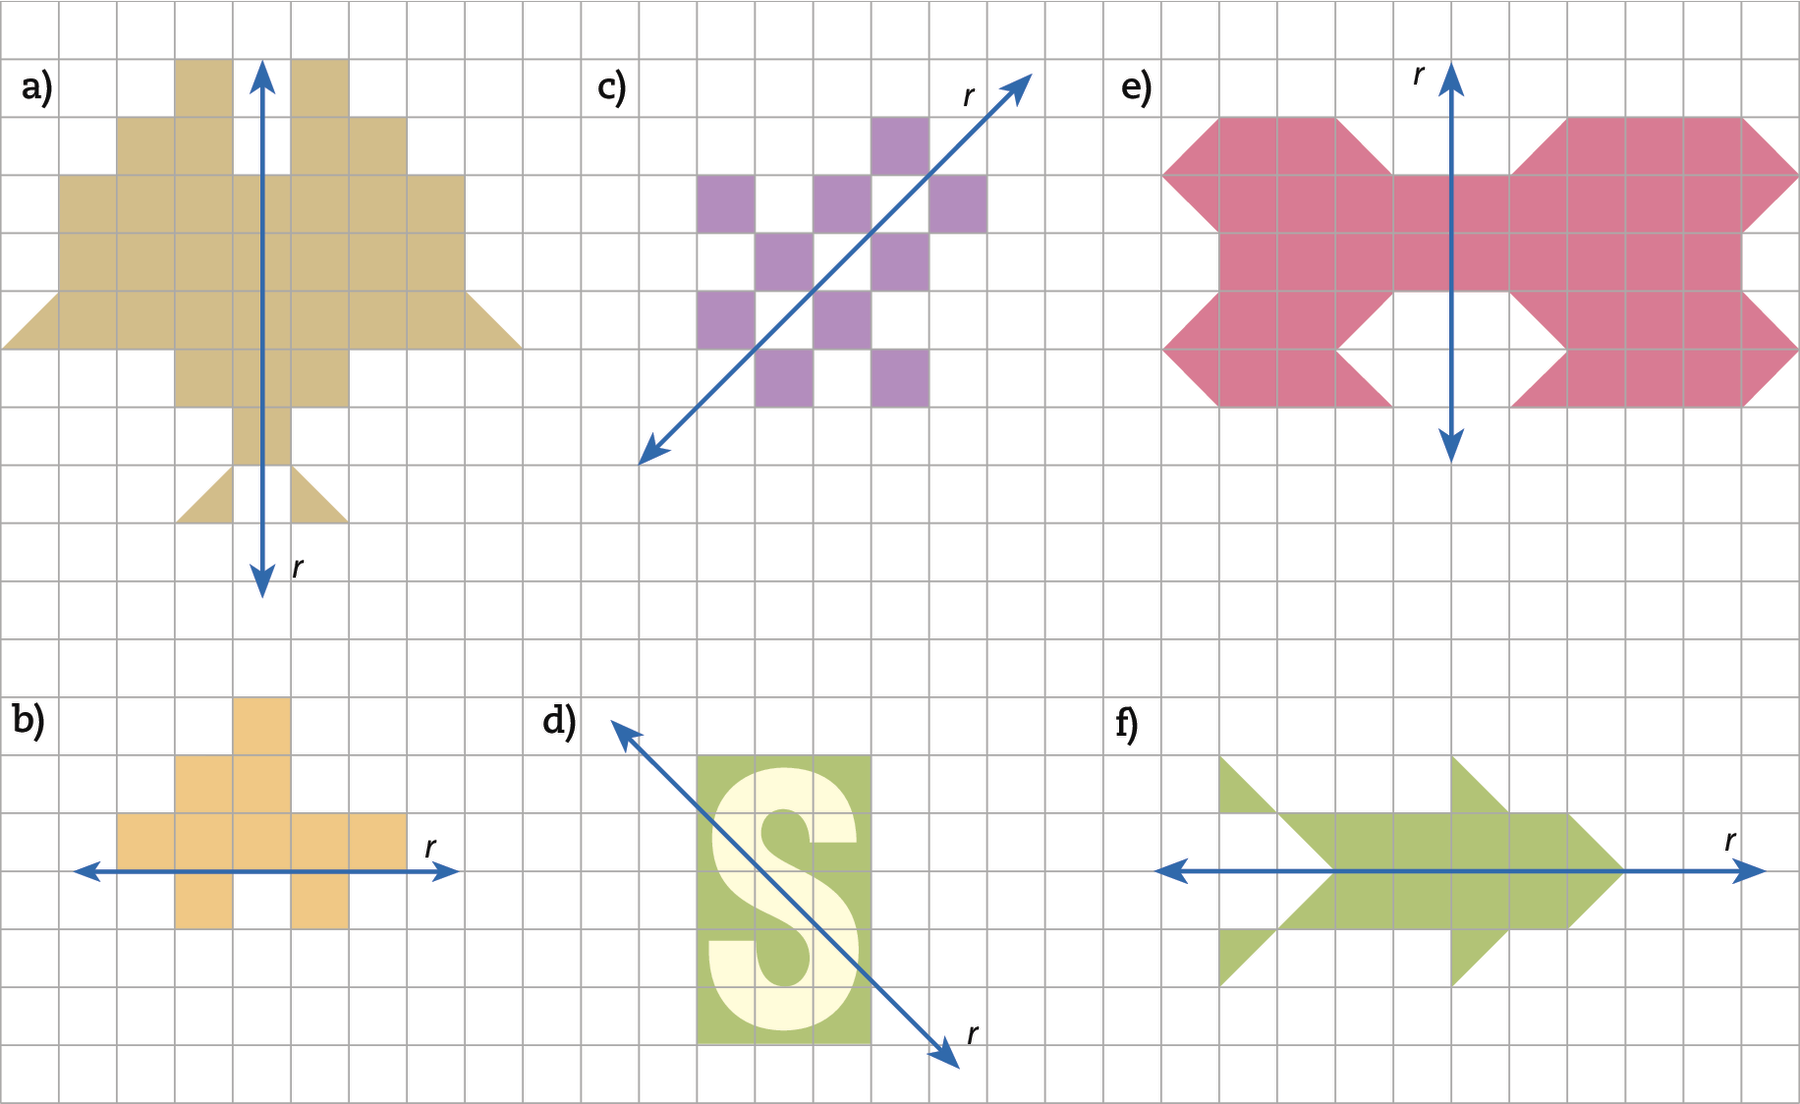 Ilustração. Malha quadriculada com 6 figuras.  a) Figura composta por 31 quadradinhos e 4 metades de um quadradinho.  Dividindo a figura em duas partes congruentes, reta vertical r. b) Figura composta por 10 quadradinhos. Dividindo a figura em duas partes não congruentes, reta horizontal r. c) Figura composta por 10 quadradinhos. Dividindo a figura em duas partes congruentes, reta inclinada r. d) Retângulo com uma figura que lembra a letra S em sua região interna. Dividindo a figura em duas partes não congruentes, reta inclinada r. e) Figura composta por 33 quadradinhos e 14 metades de quadradinhos. Dividindo a figura em duas partes não congruentes, reta vertical r. f) Figura composta por 8 quadradinhos e 8 metades de quadradinho. Dividindo a figura em duas partes congruentes, reta horizontal r.